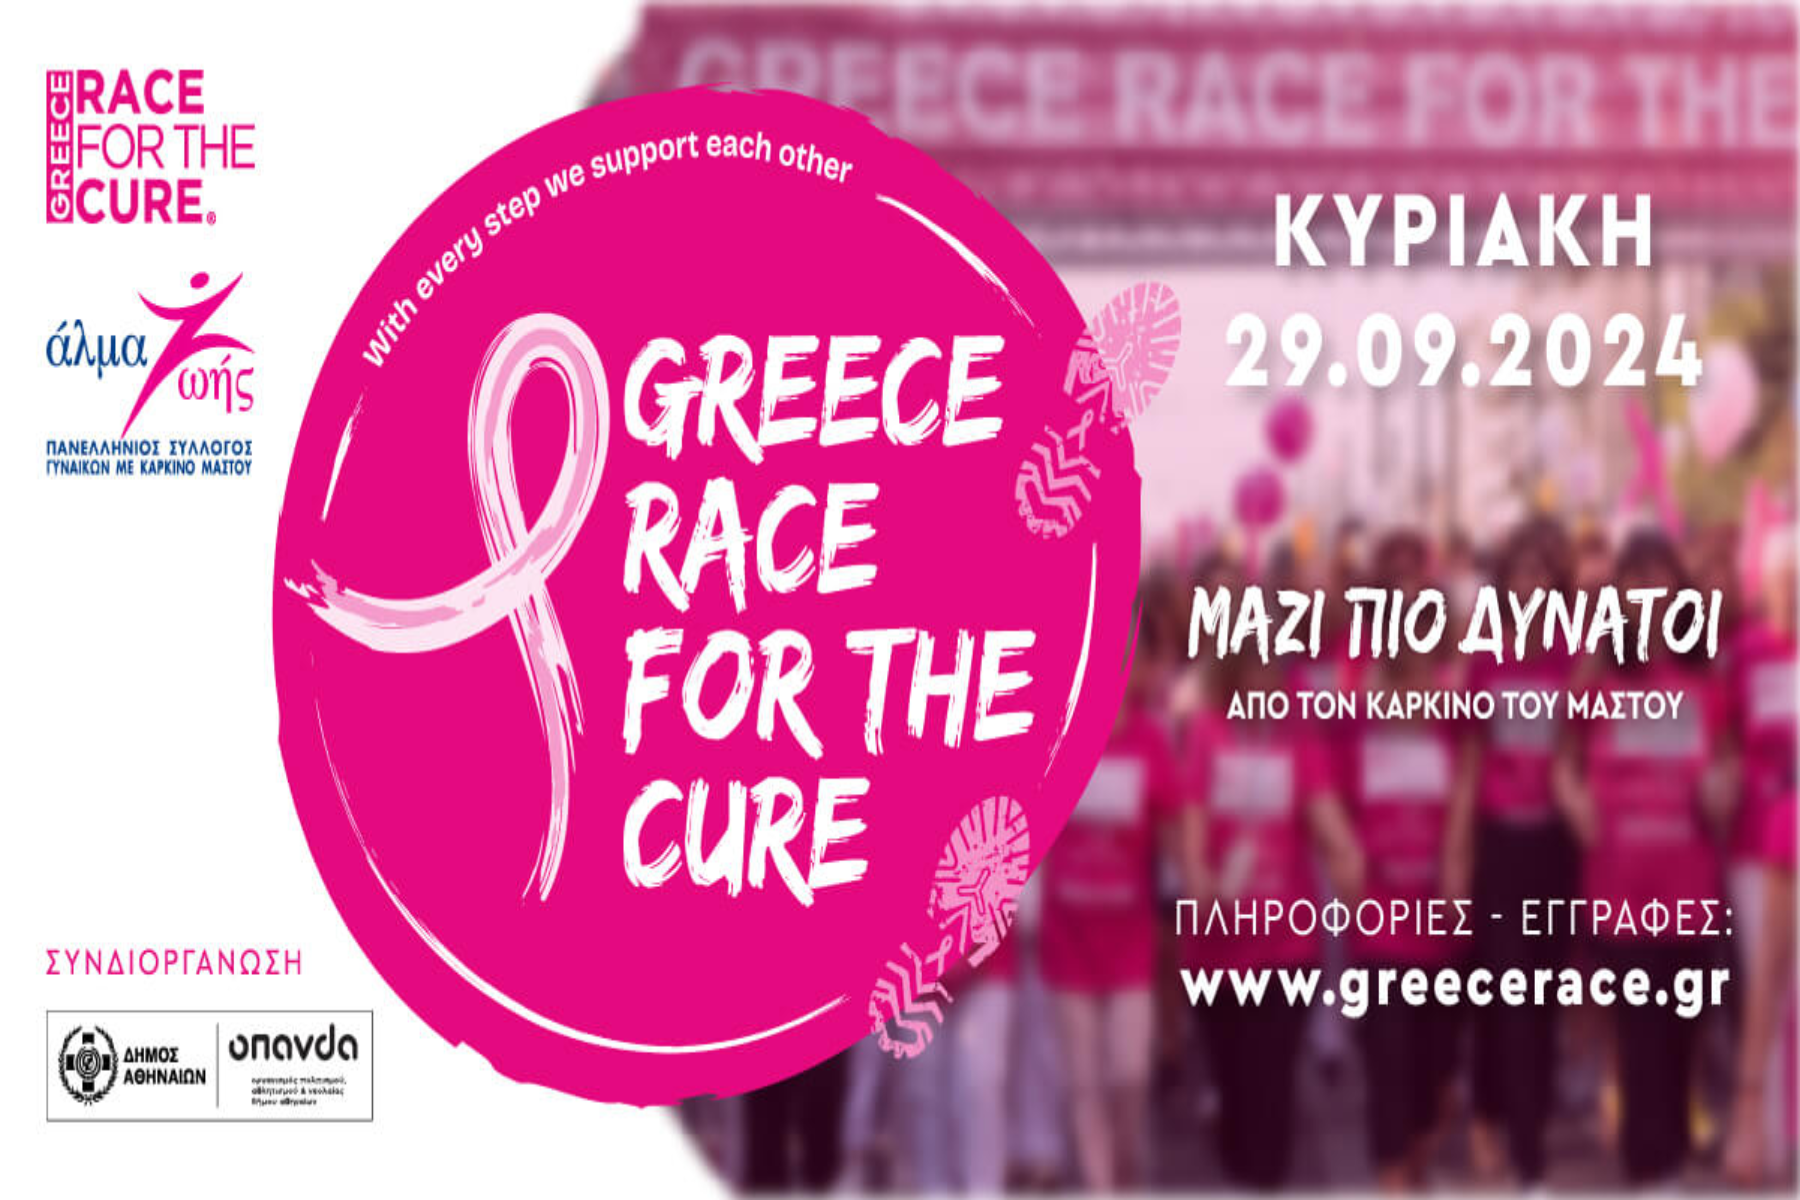 Άλμα ζωής: Για 16η χρονιά διοργανώνεται το Greece Race for the Cure®